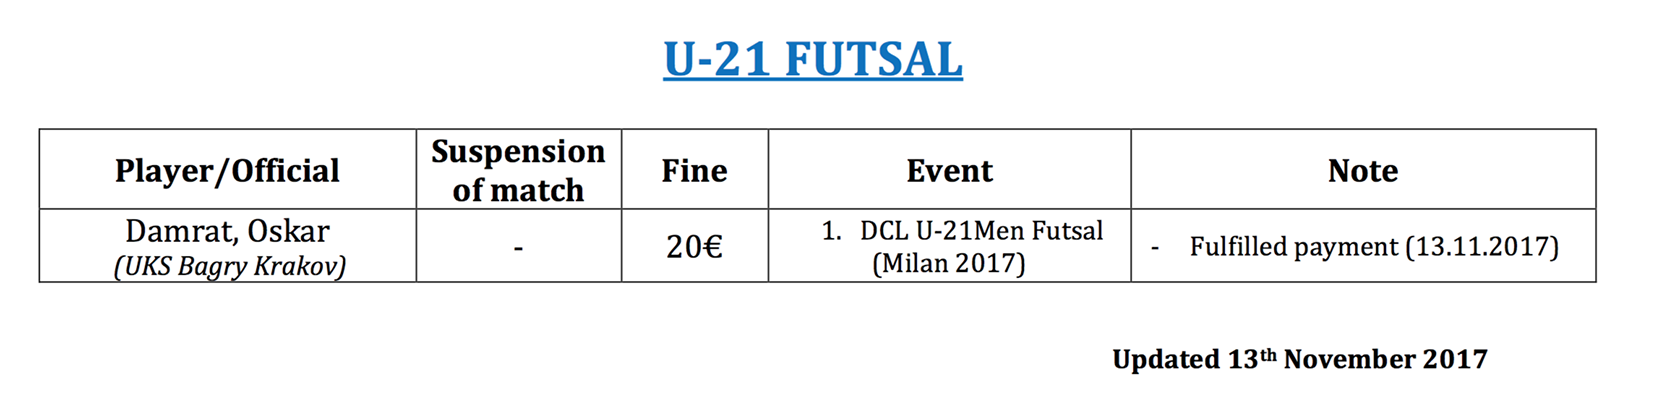 sanction u21 futsal 13 11 2017